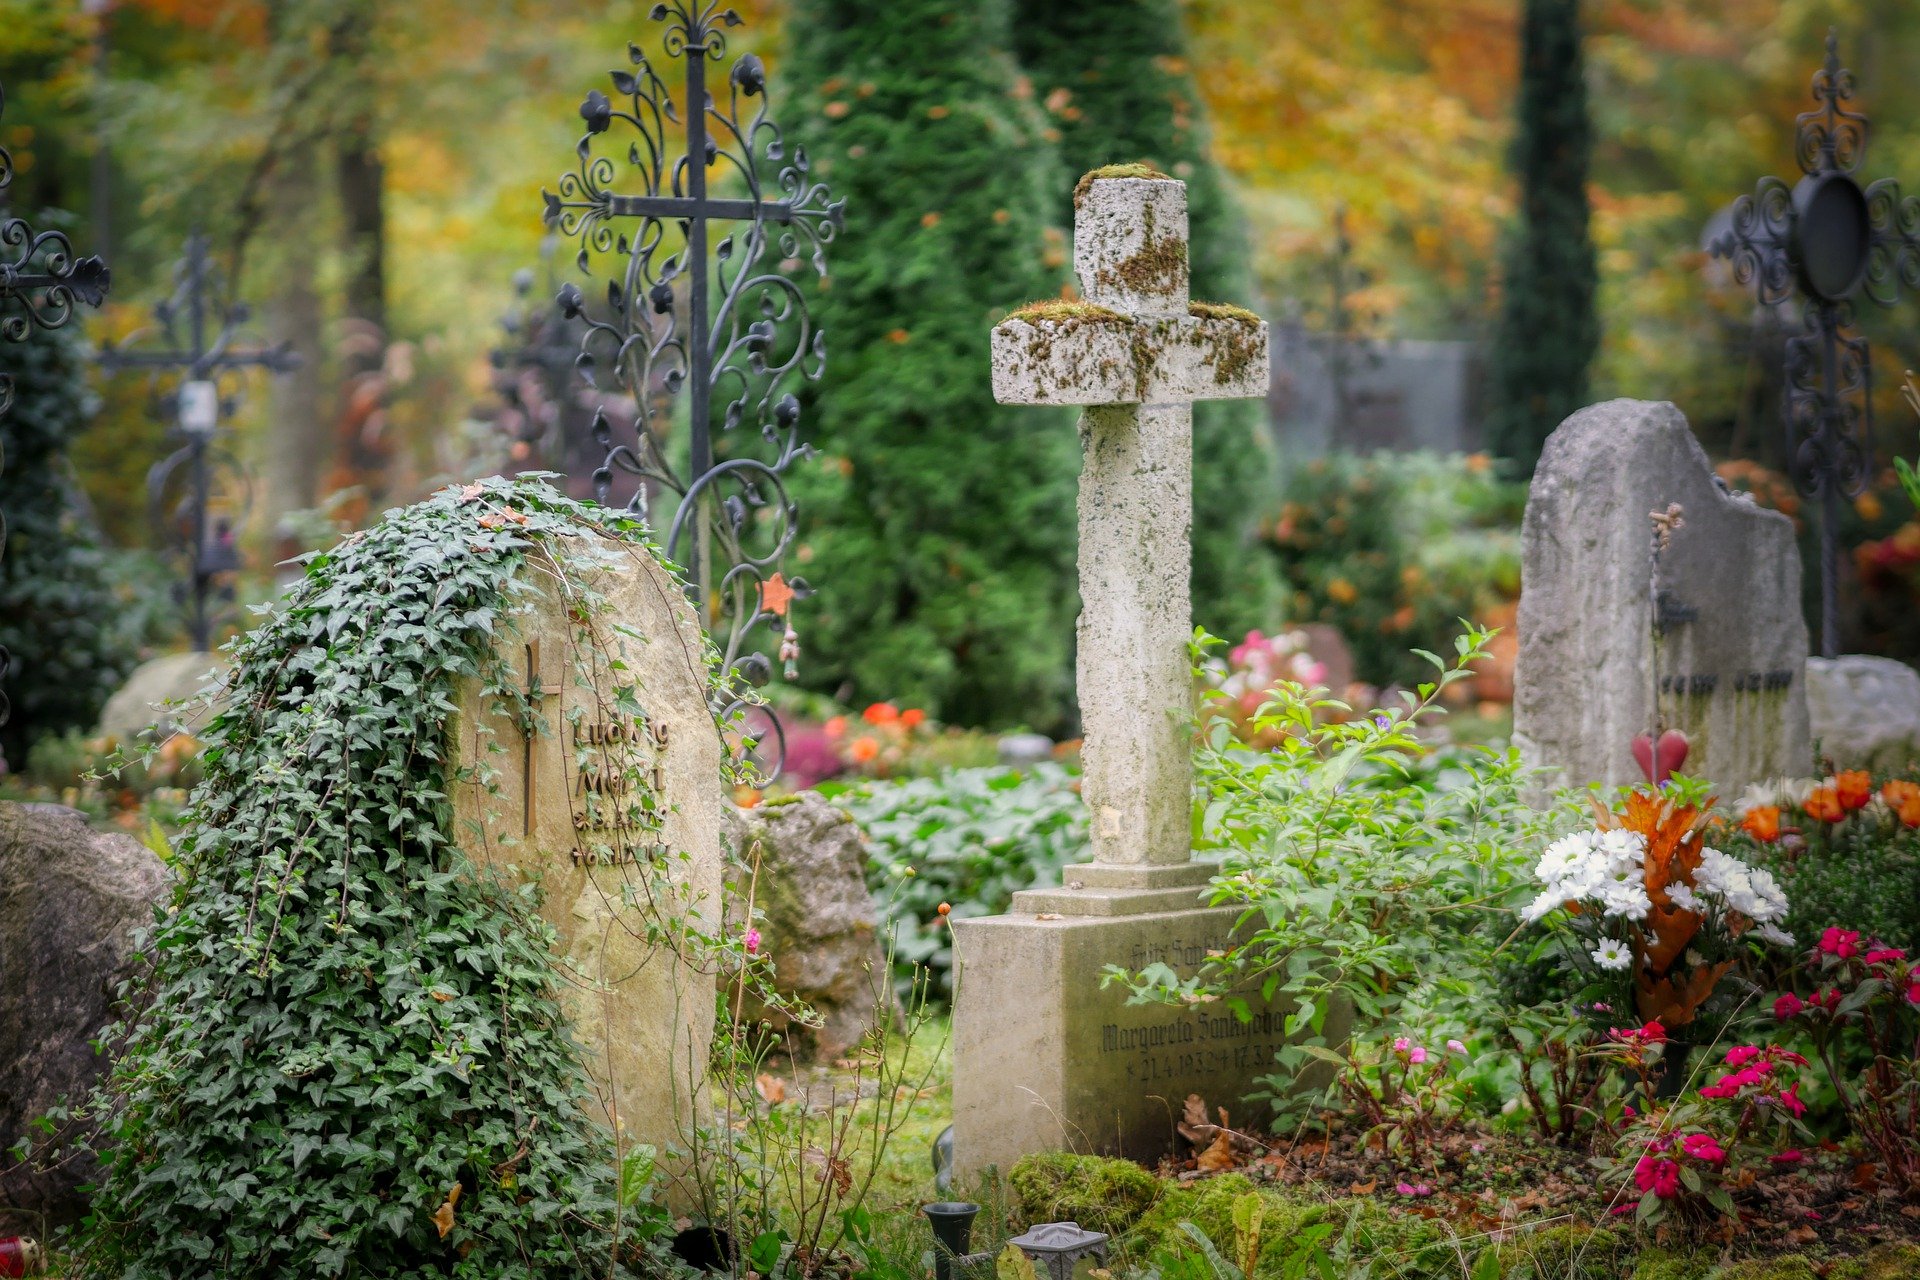  خواب قبرستان: تعبیرش چیست؟